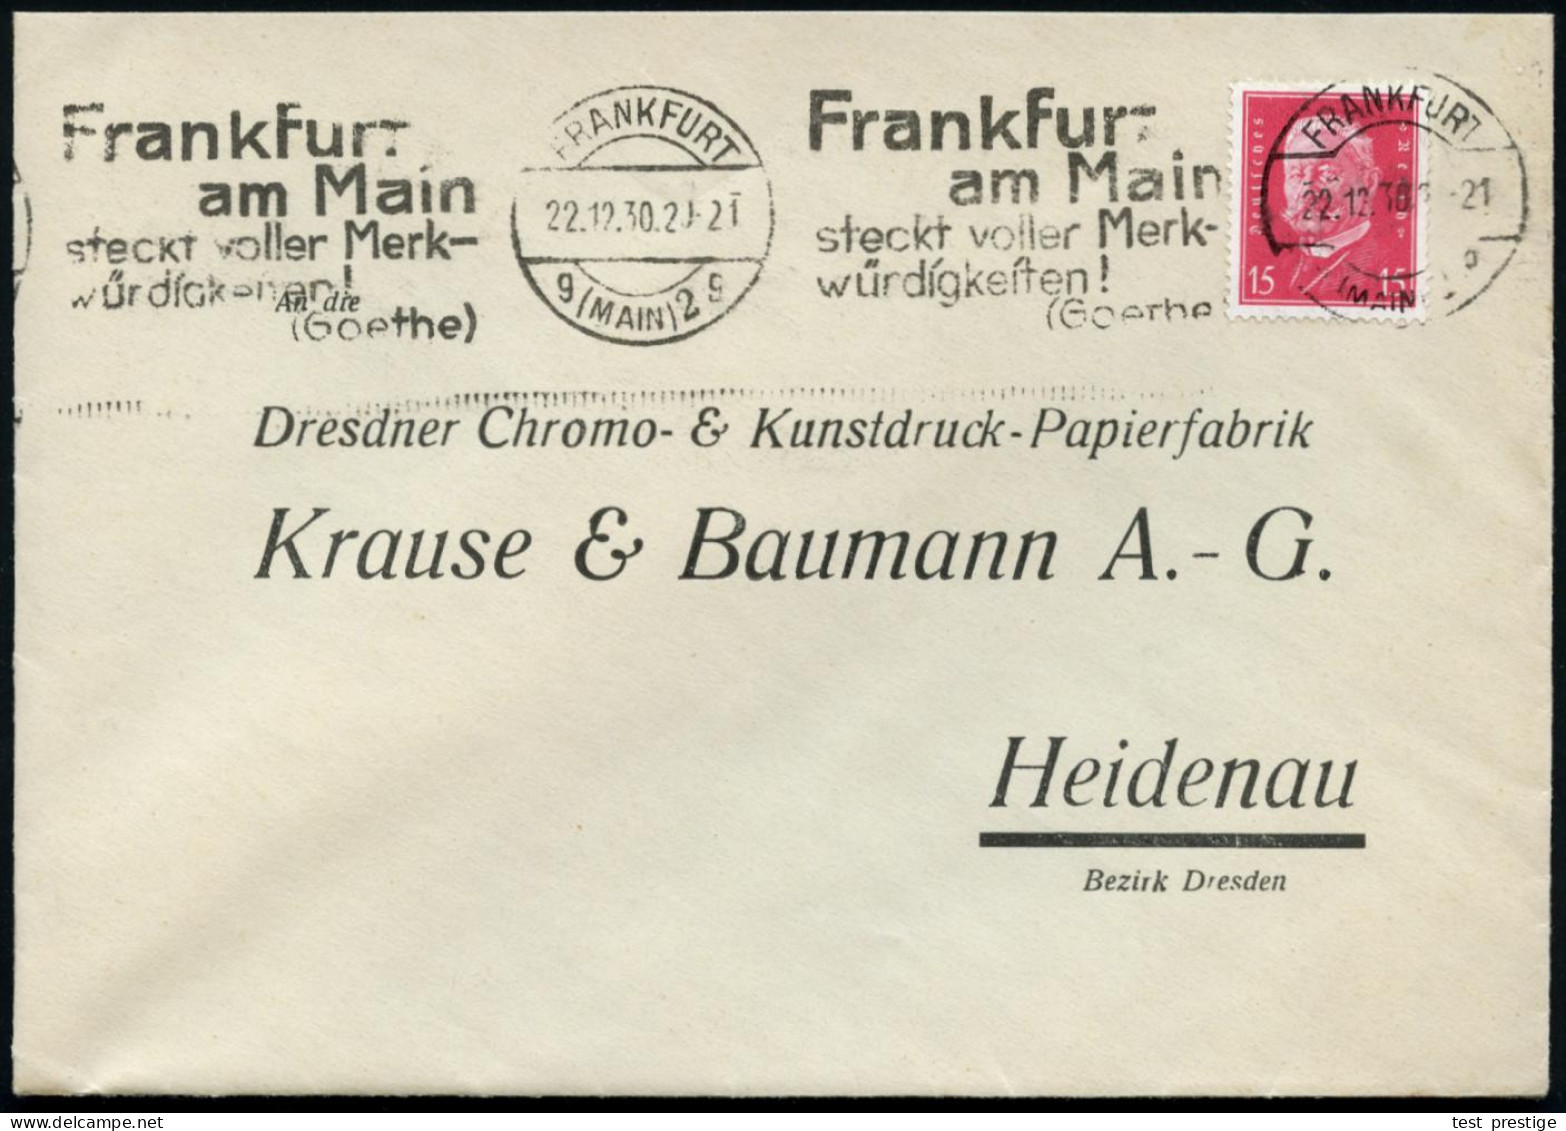 FRANKFURT/ G(MAIN)2/ G/ Frankfurt/ ..steckt Voller Merk-/ Würdigkeiten!/ (Goethe) 1931 (18.10.) Band-MWSt Klar Auf Firme - Ecrivains